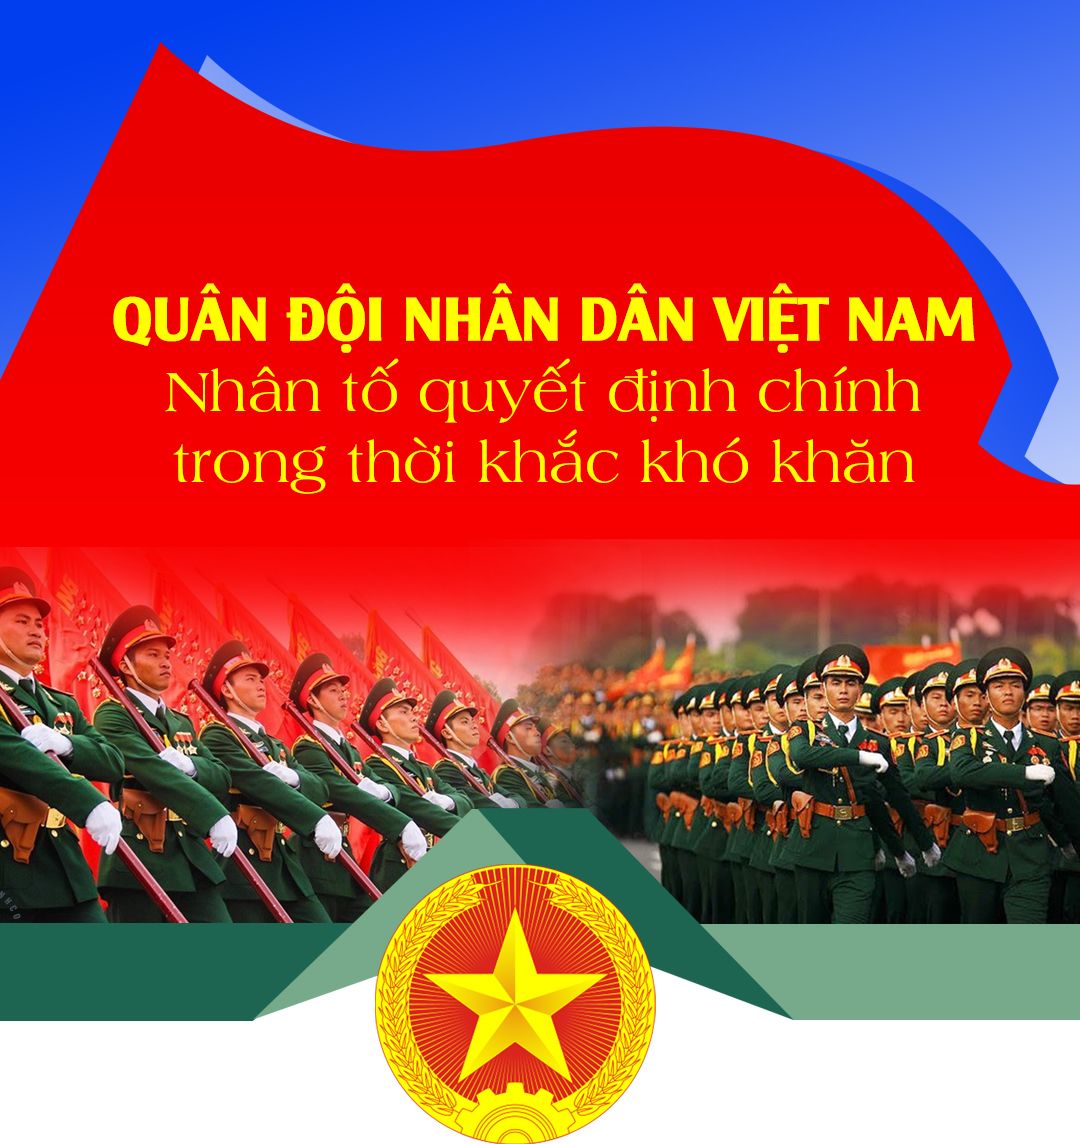 Quân đội nhân dân Việt Nam – Nhân tố quyết định chính trong thời khắc khó khăn